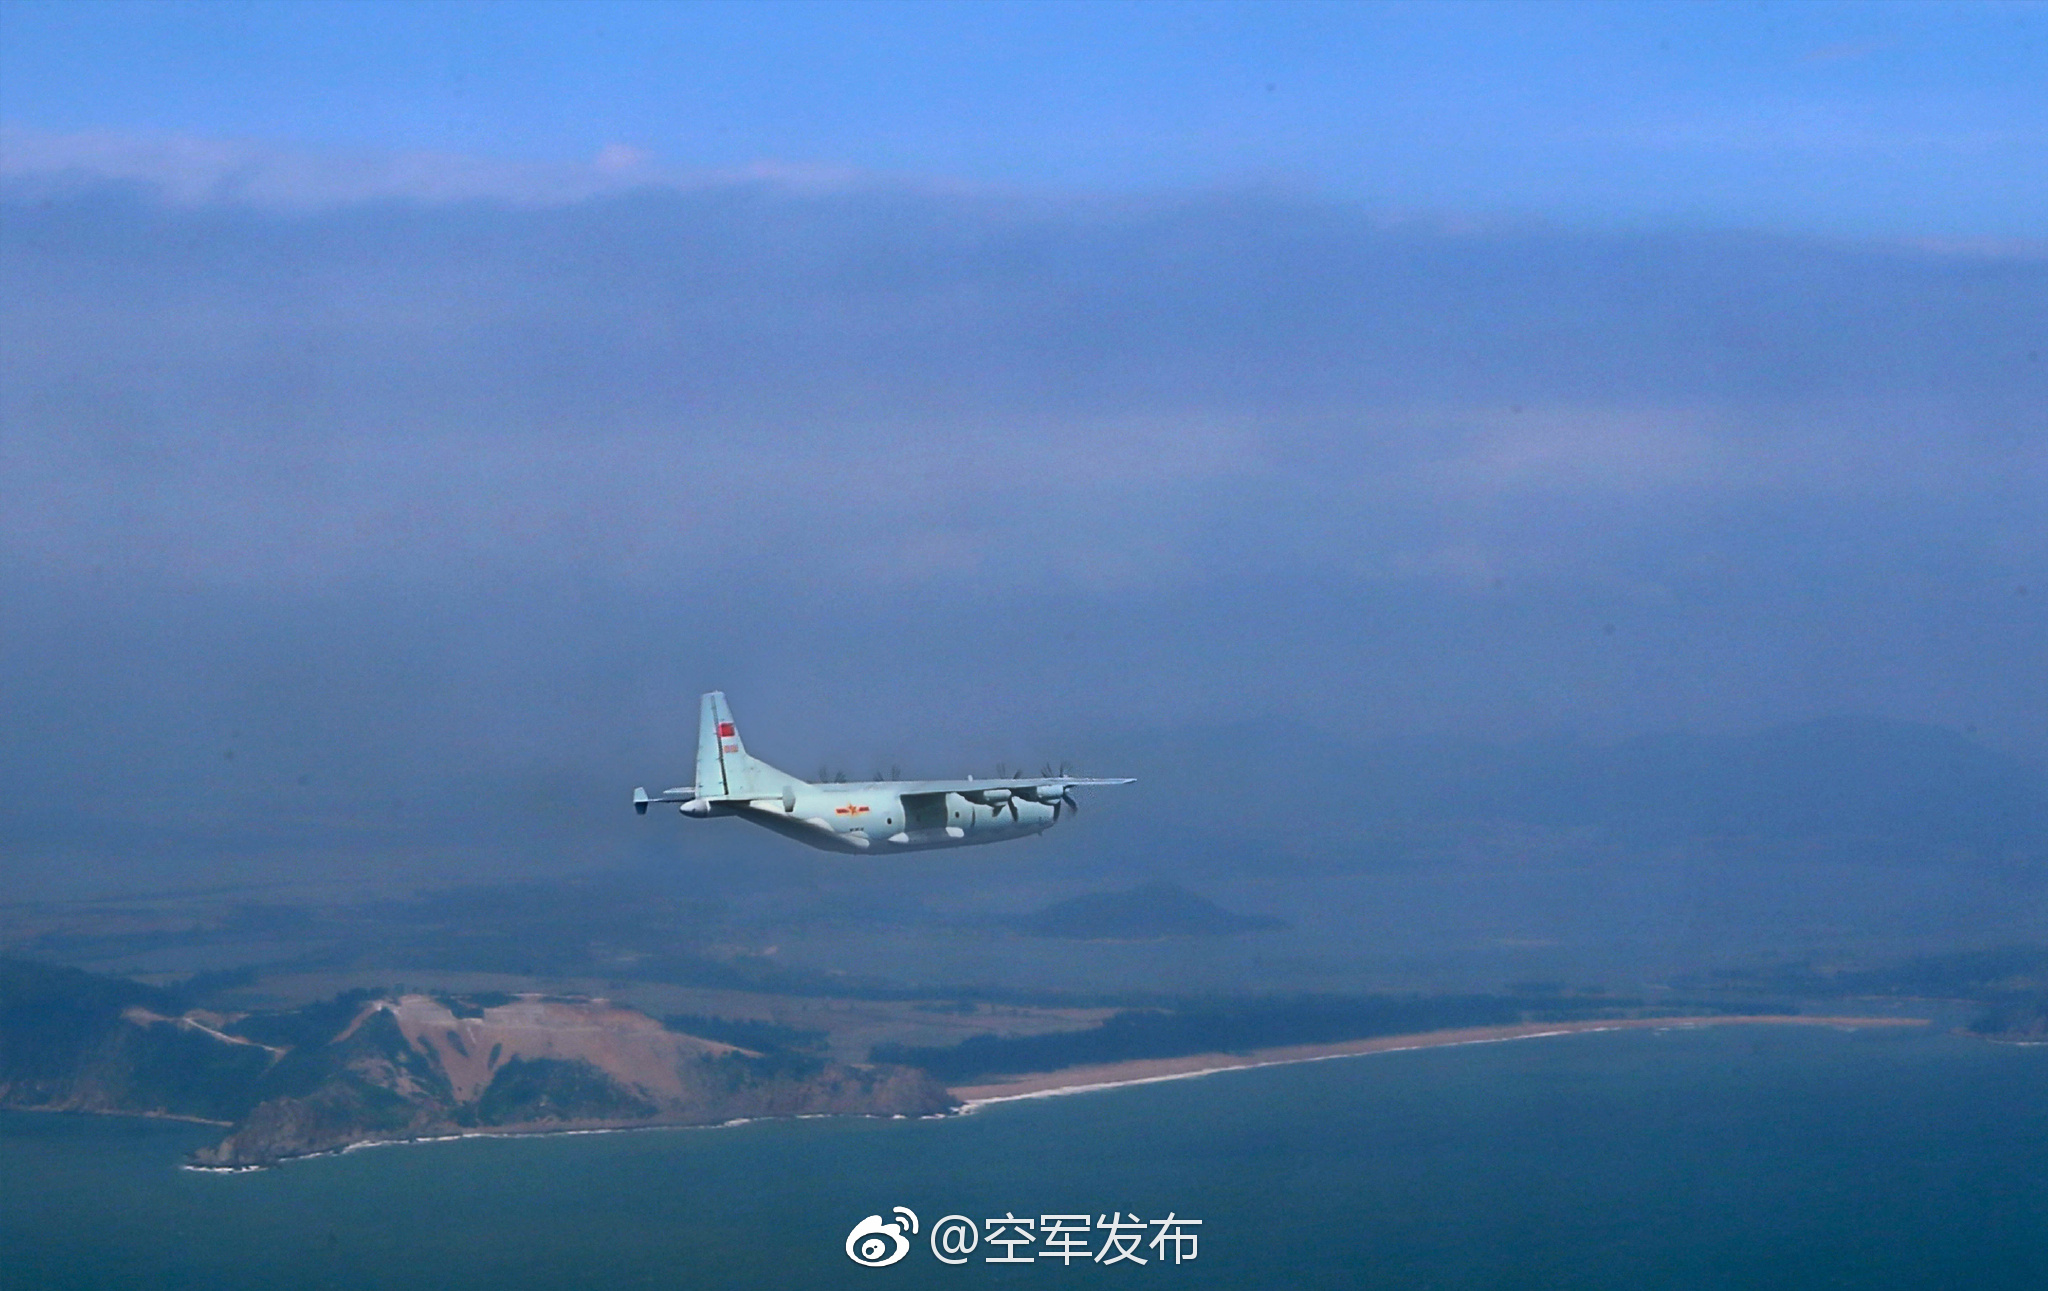 2017-12-03-De-Sichuan-aux-Spratleys-PLAAF-simule-le-parachutage-05.jpg